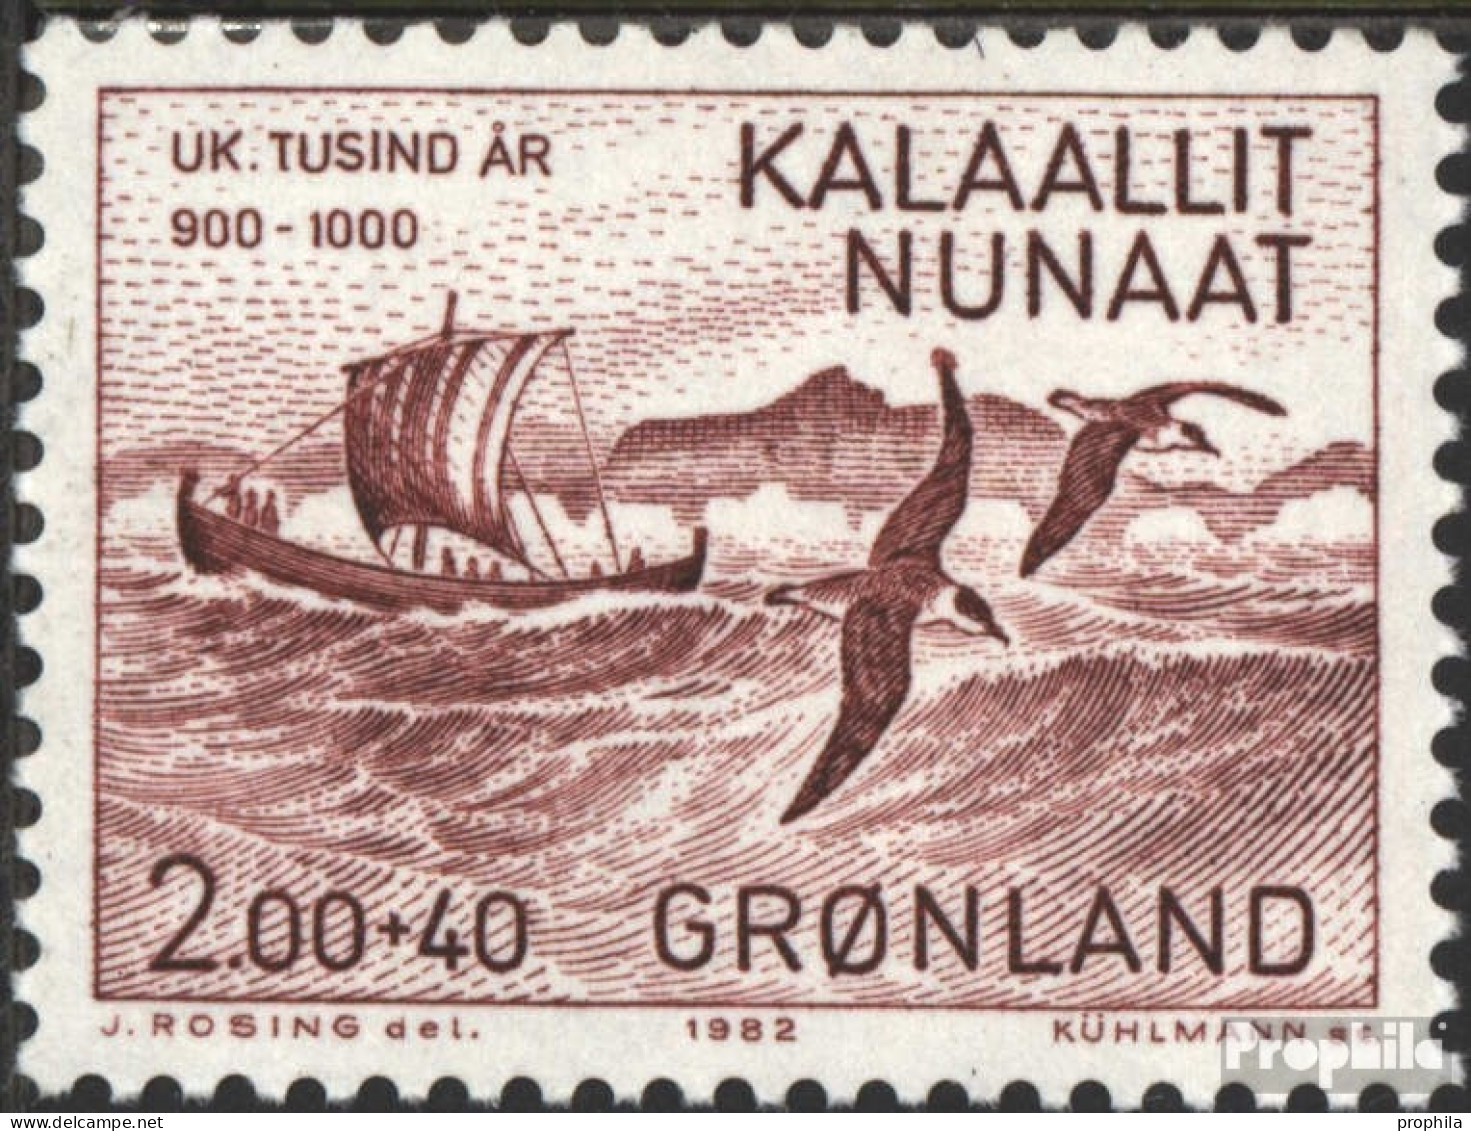 Dänemark - Grönland 137 (kompl.Ausg.) Postfrisch 1982 1000 Jahre Grönland-Besiedelung - Unused Stamps